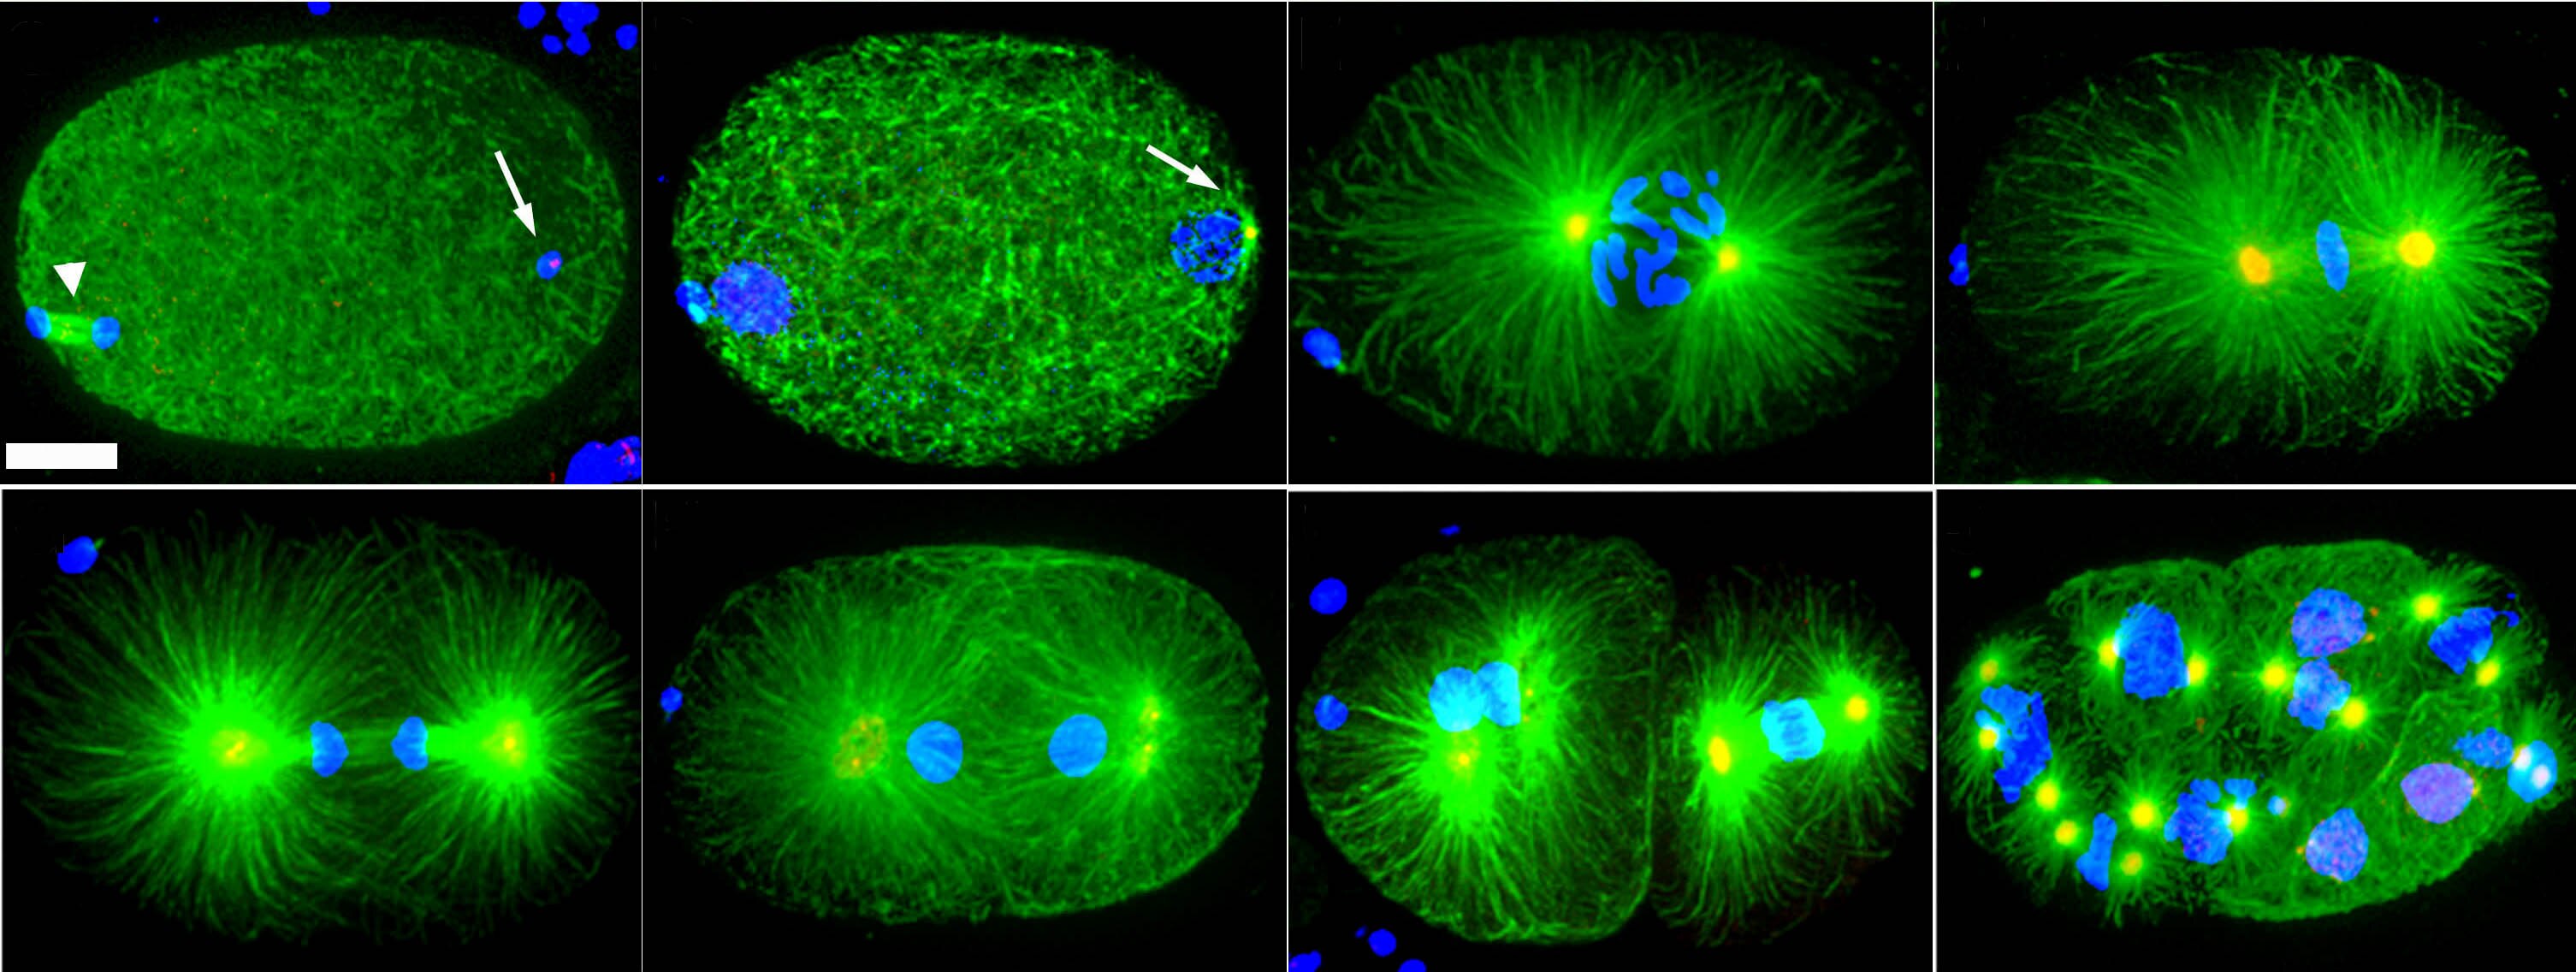 Microtubule organization in early C. elegans embryos